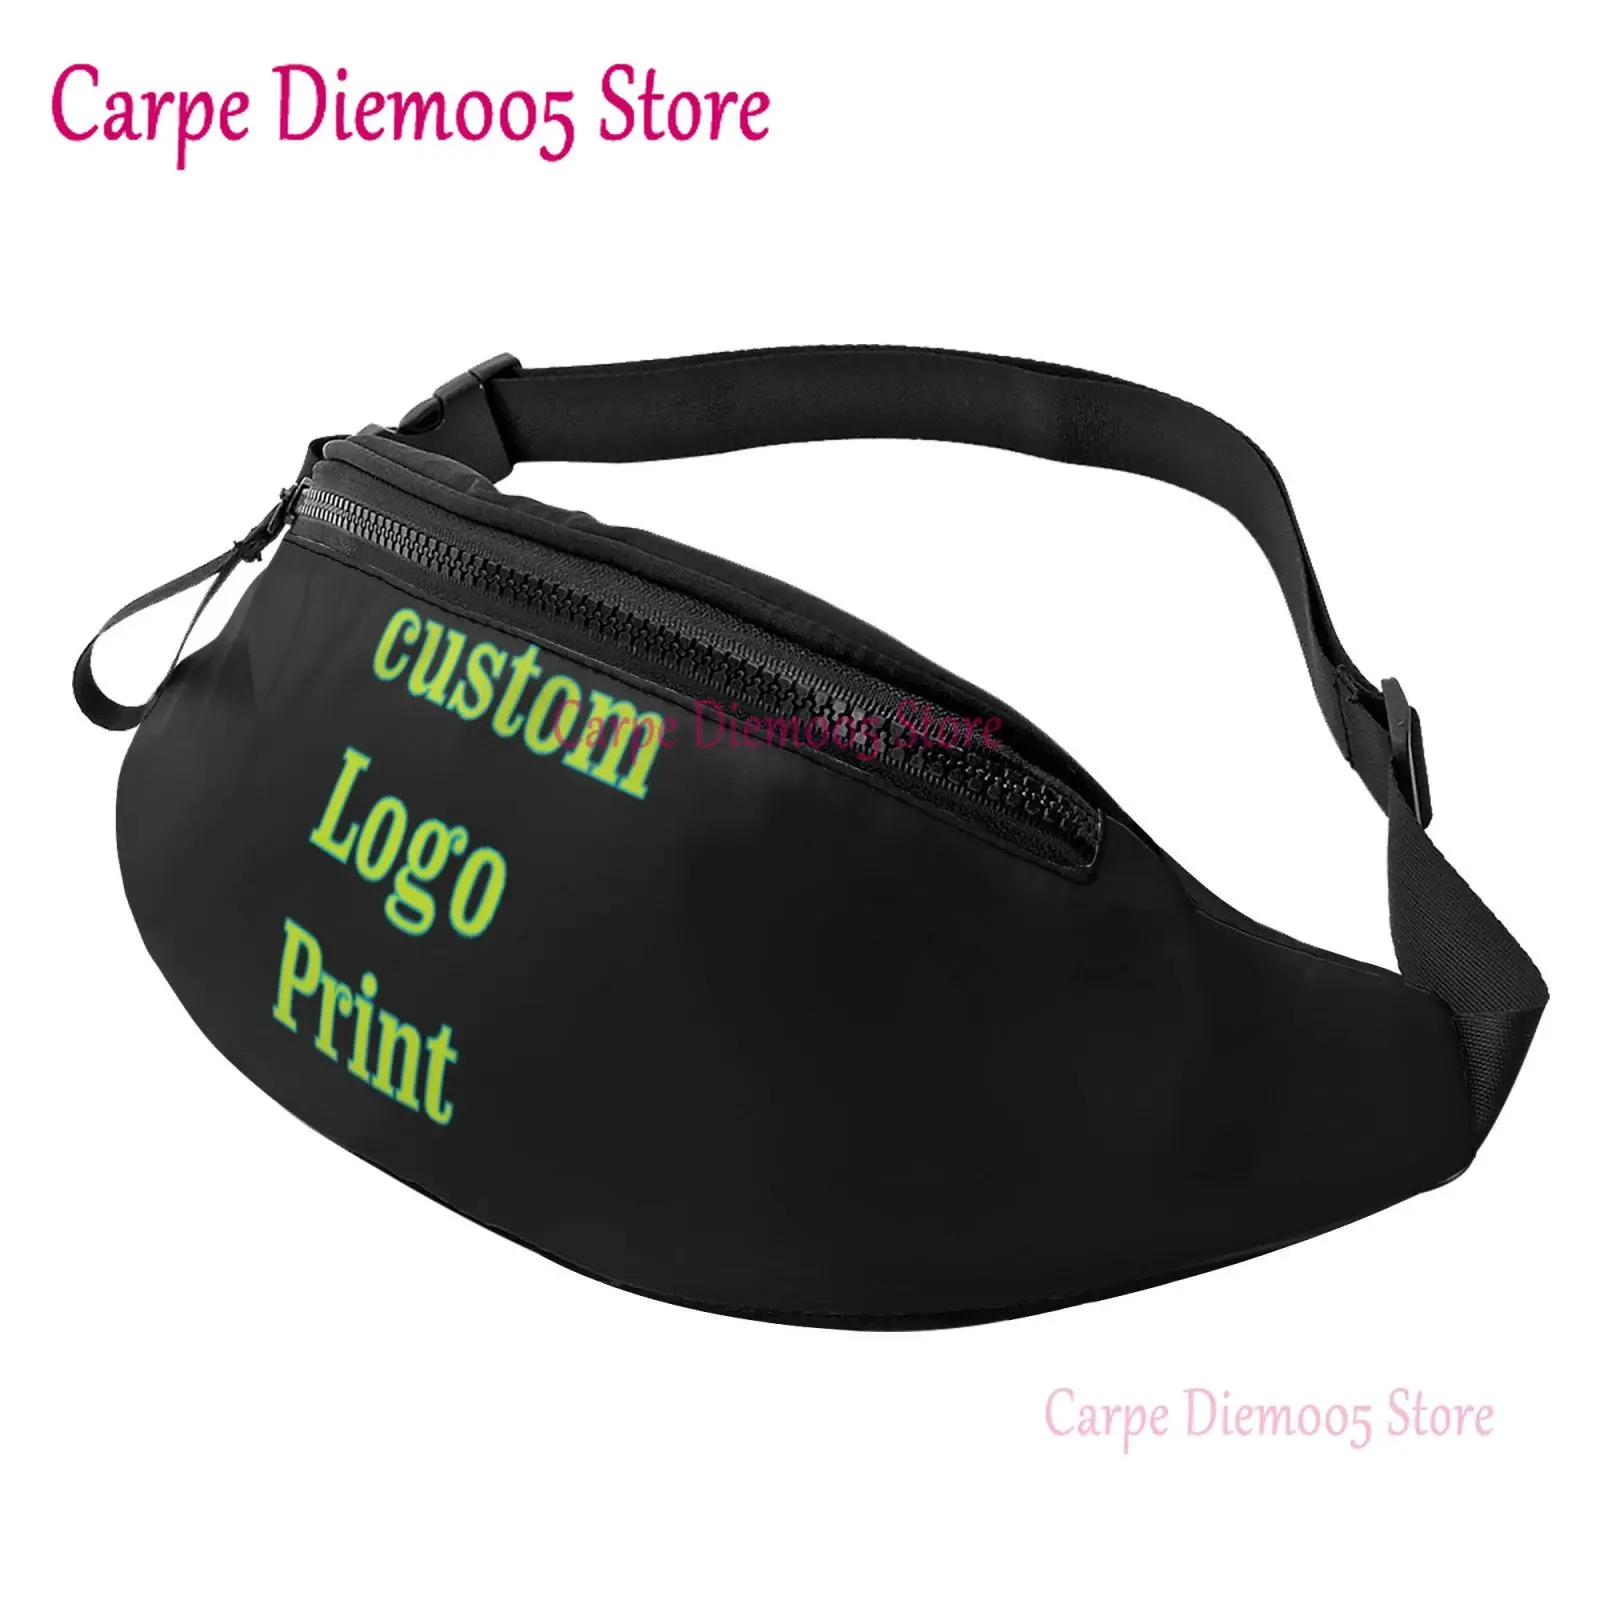 

Custom Logo Waist Bag with Headphone Hole Belt Bag Adjustable Sling Pocket Fashion Hip Bum Bag for Women Men Kids